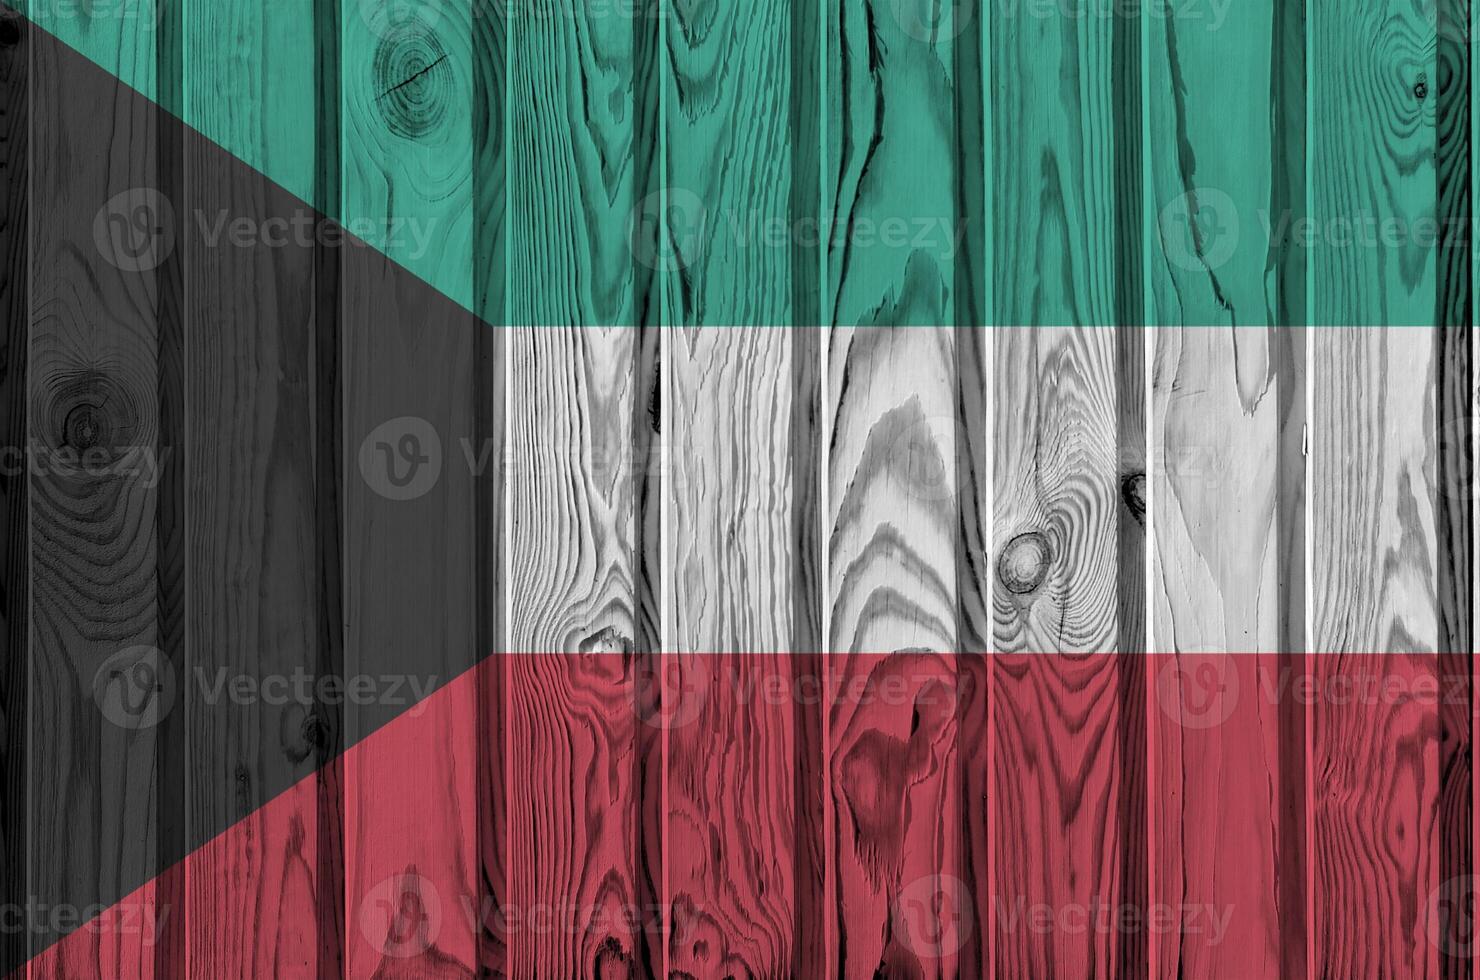 kuwait flagga avbildad i ljus måla färger på gammal trä- vägg. texturerad baner på grov bakgrund foto